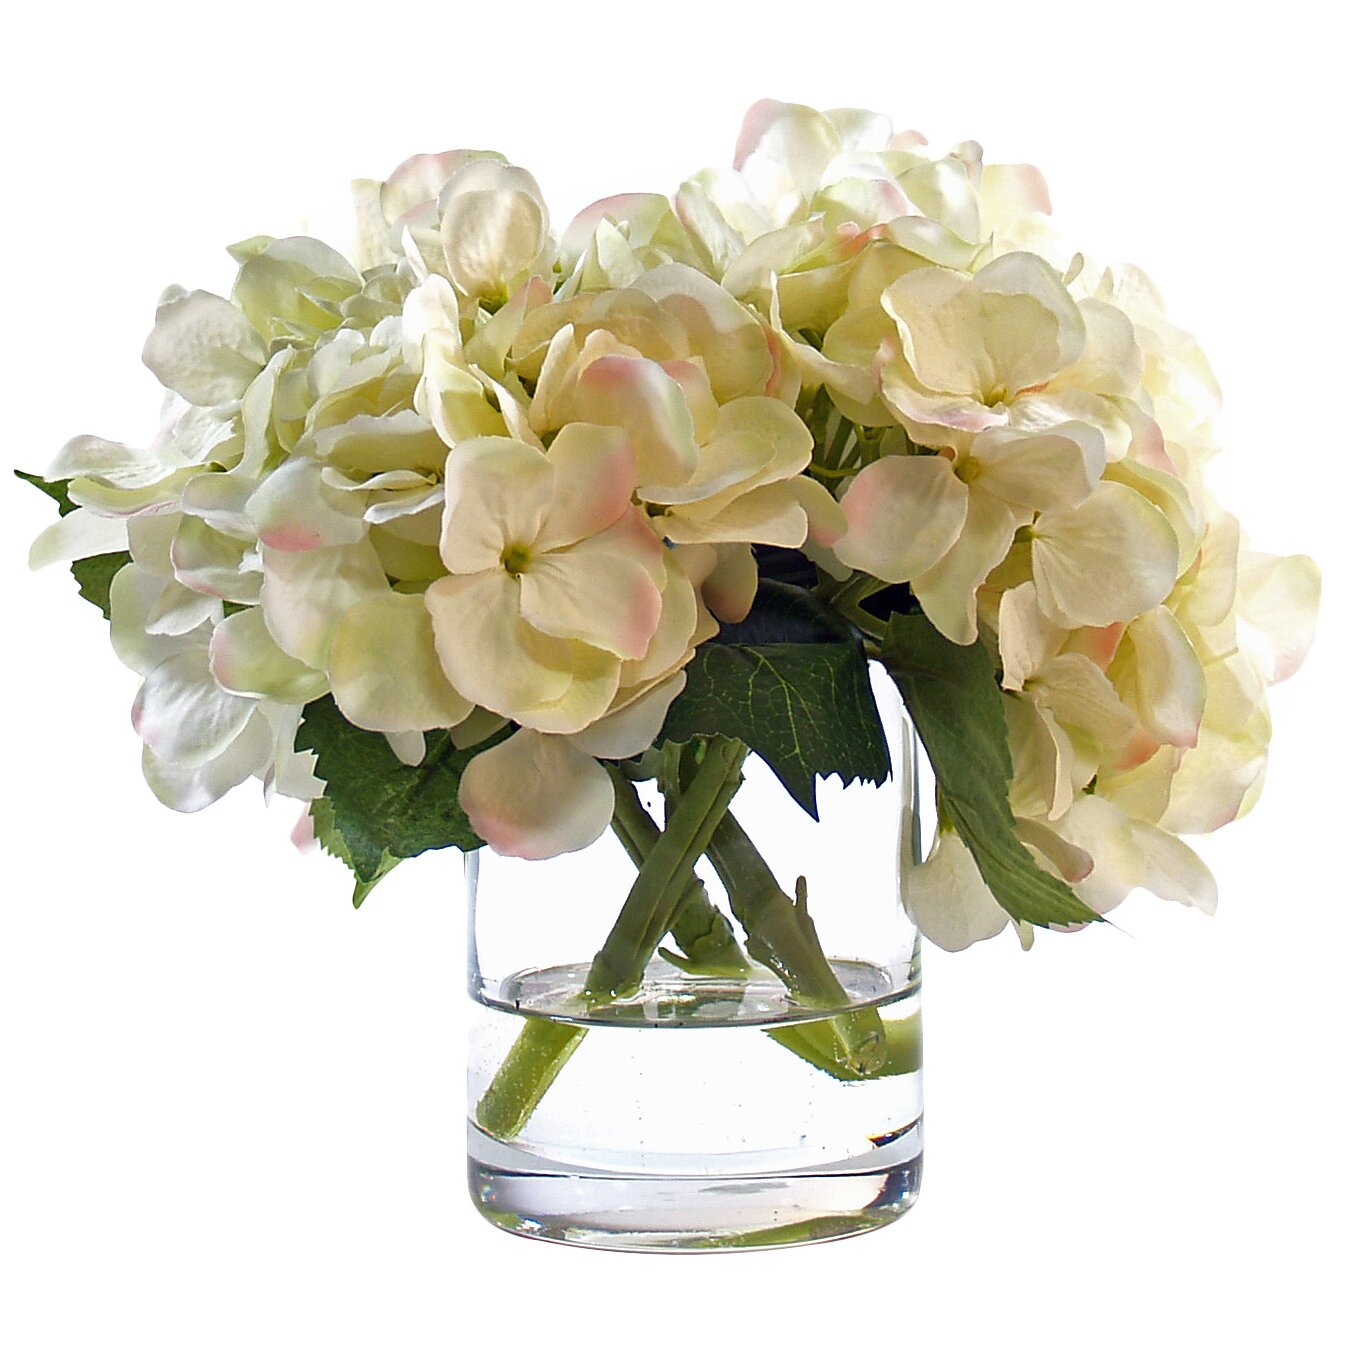 White Hydrangea in Glass Vase by Beachcrest Home